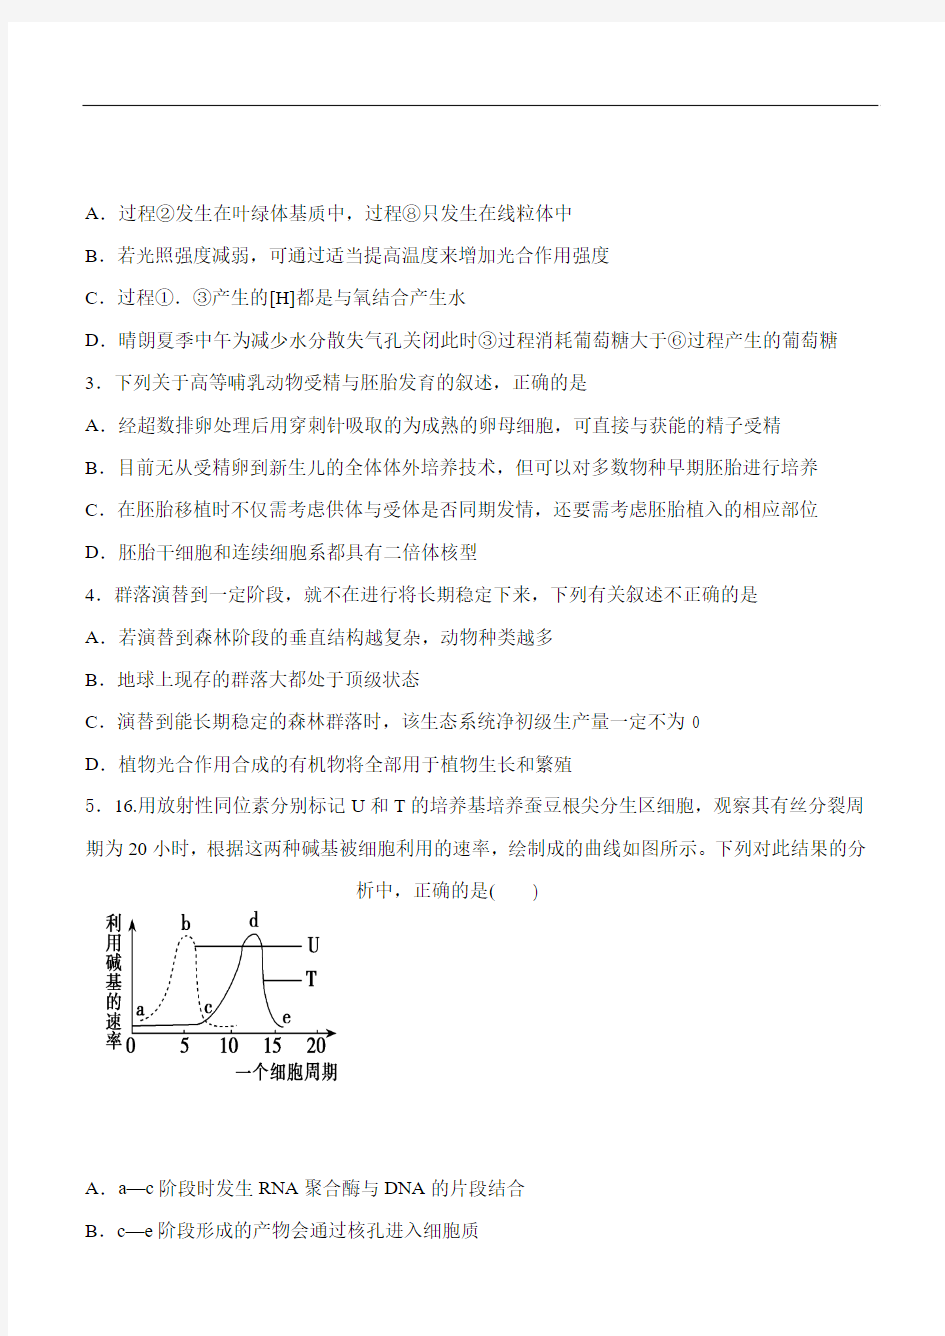 2014浙江省高考压轴卷理综试题和答案